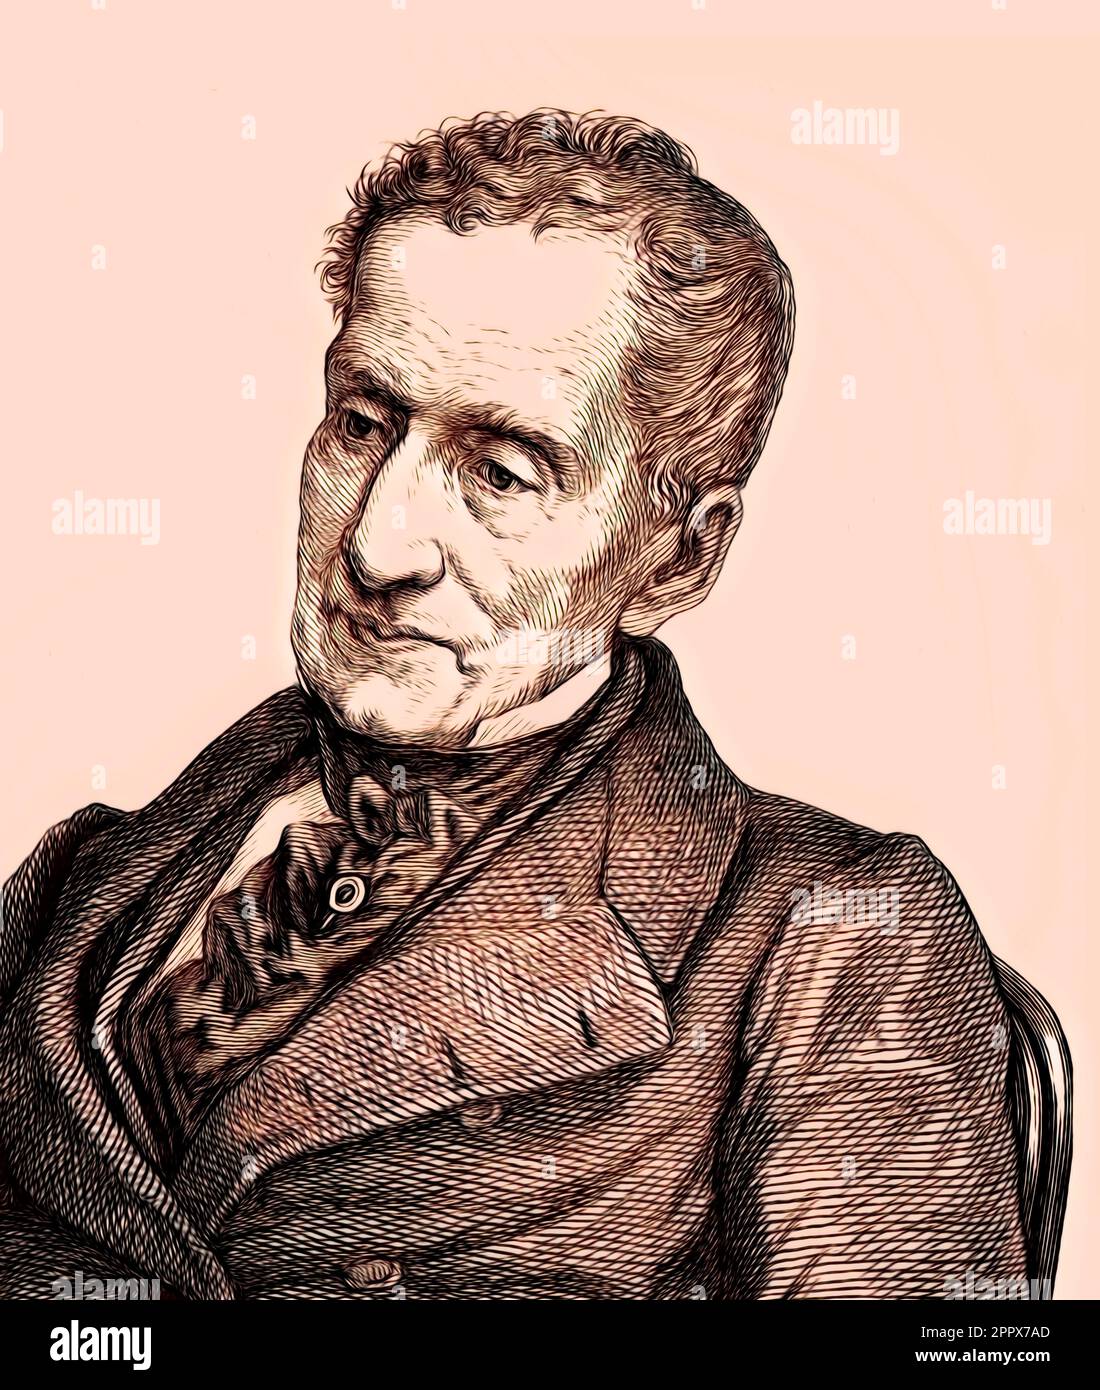 Portrait of Prince Klemens Wenzel von Metternich, 1773-1859, statesman in Imperial Austria, digital edited Stock Photo